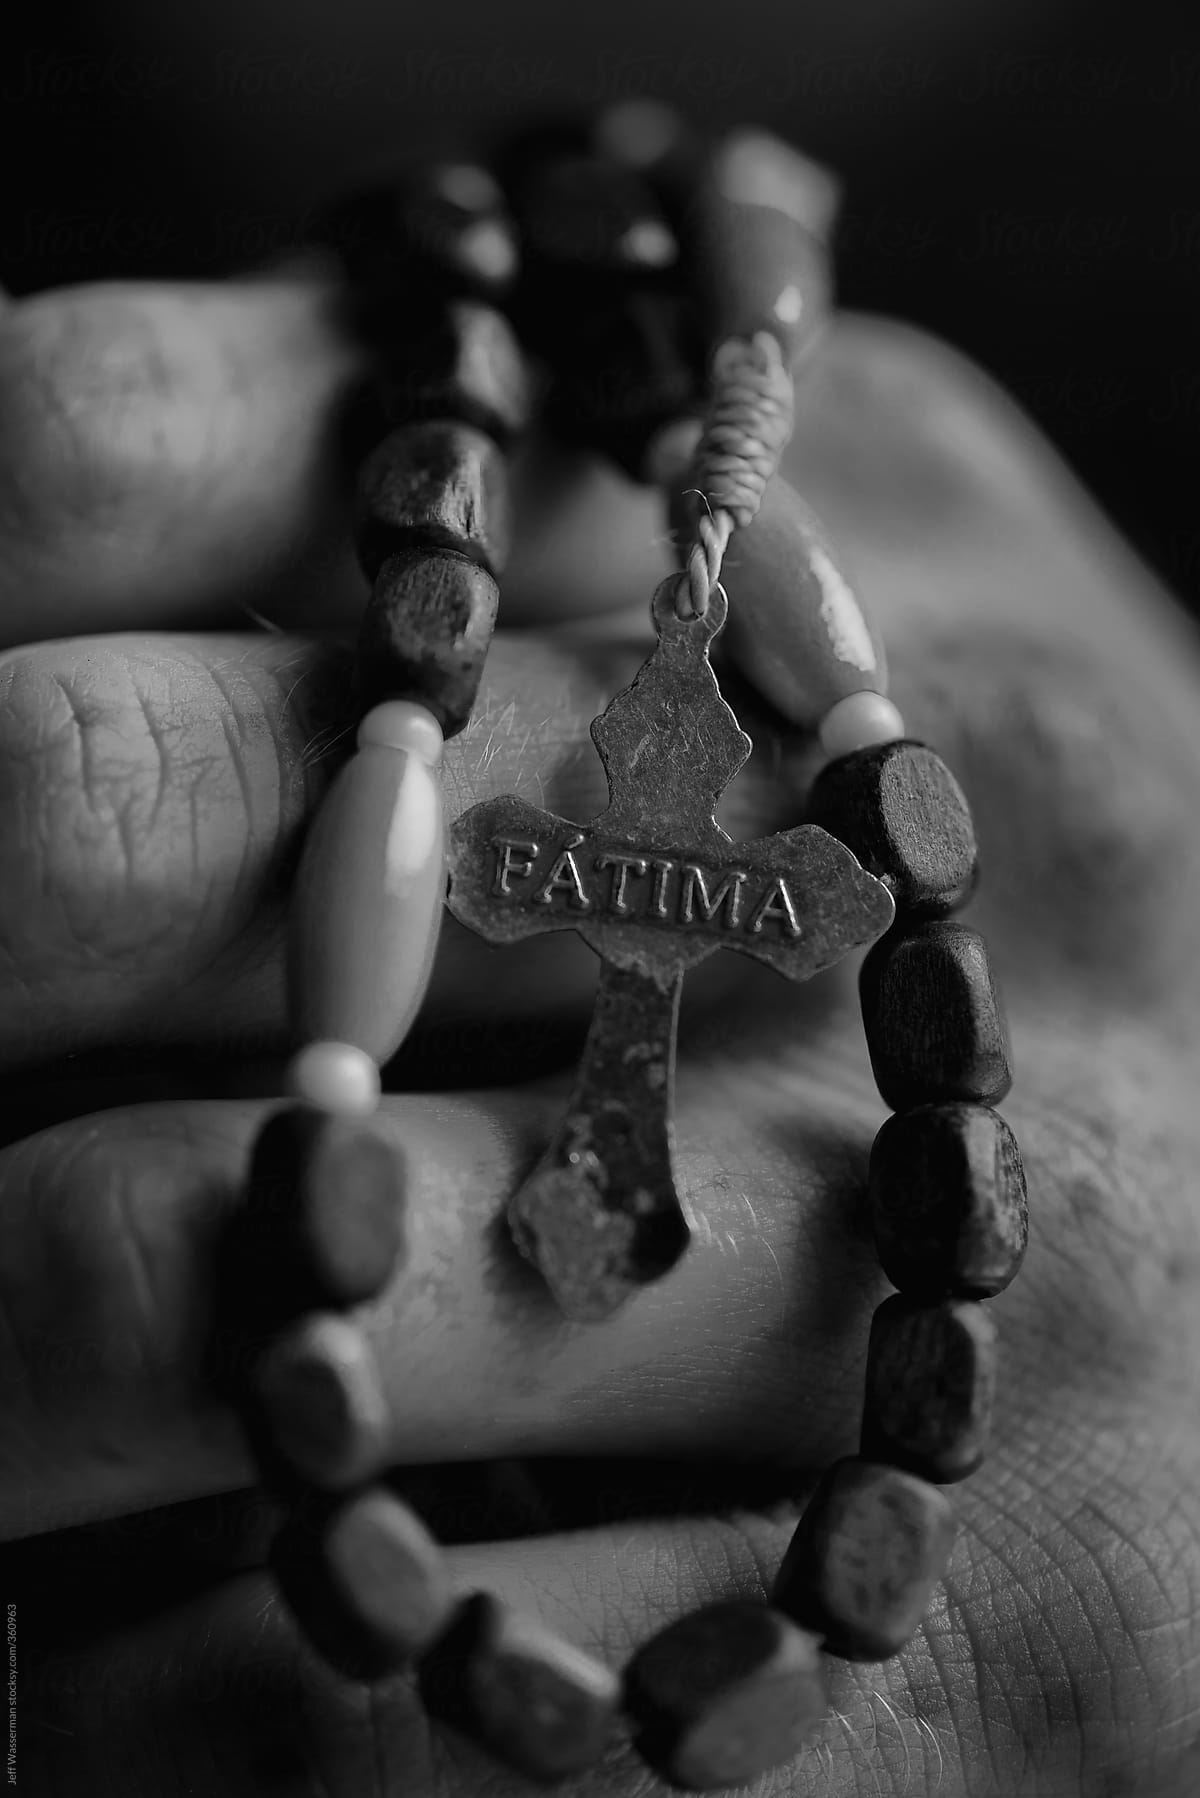 Fatima Rosary in Hand